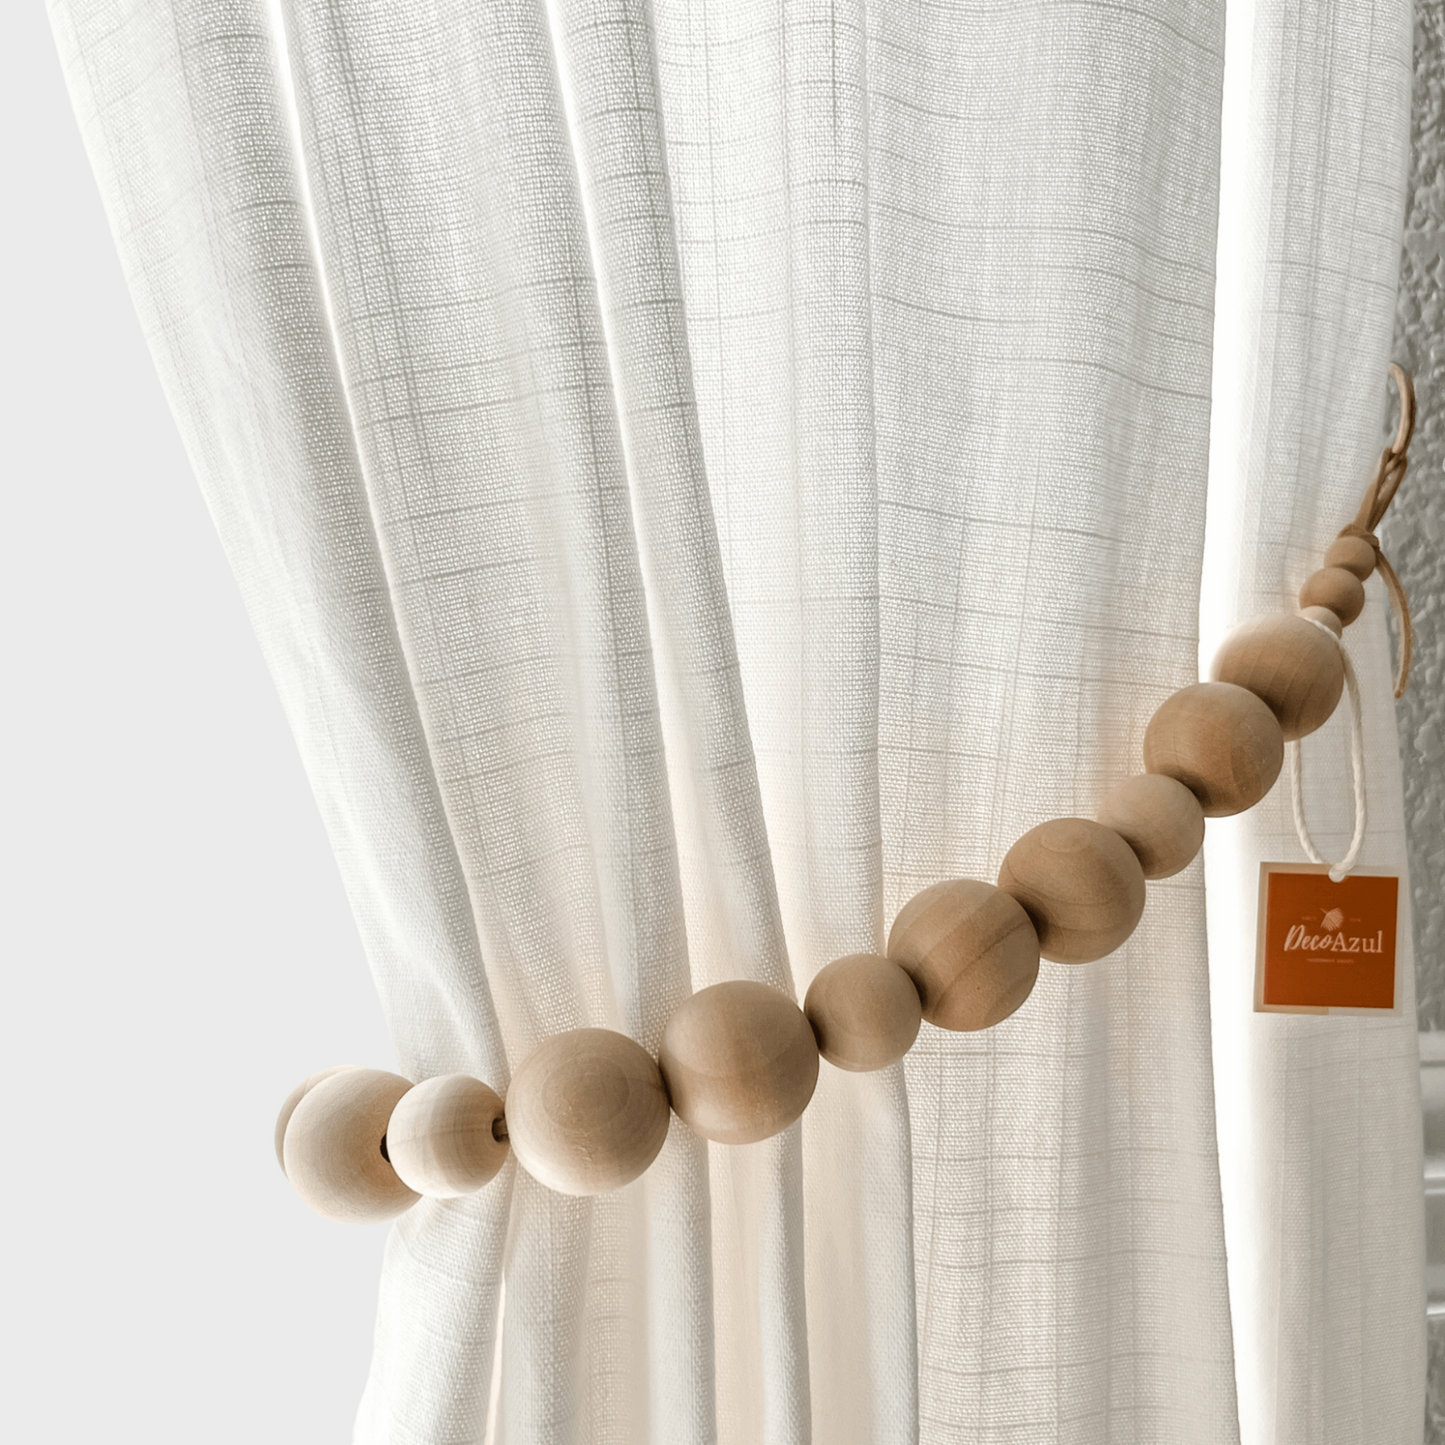 Comprar 2 uds útiles alzapaños para cortinas fijación moderna